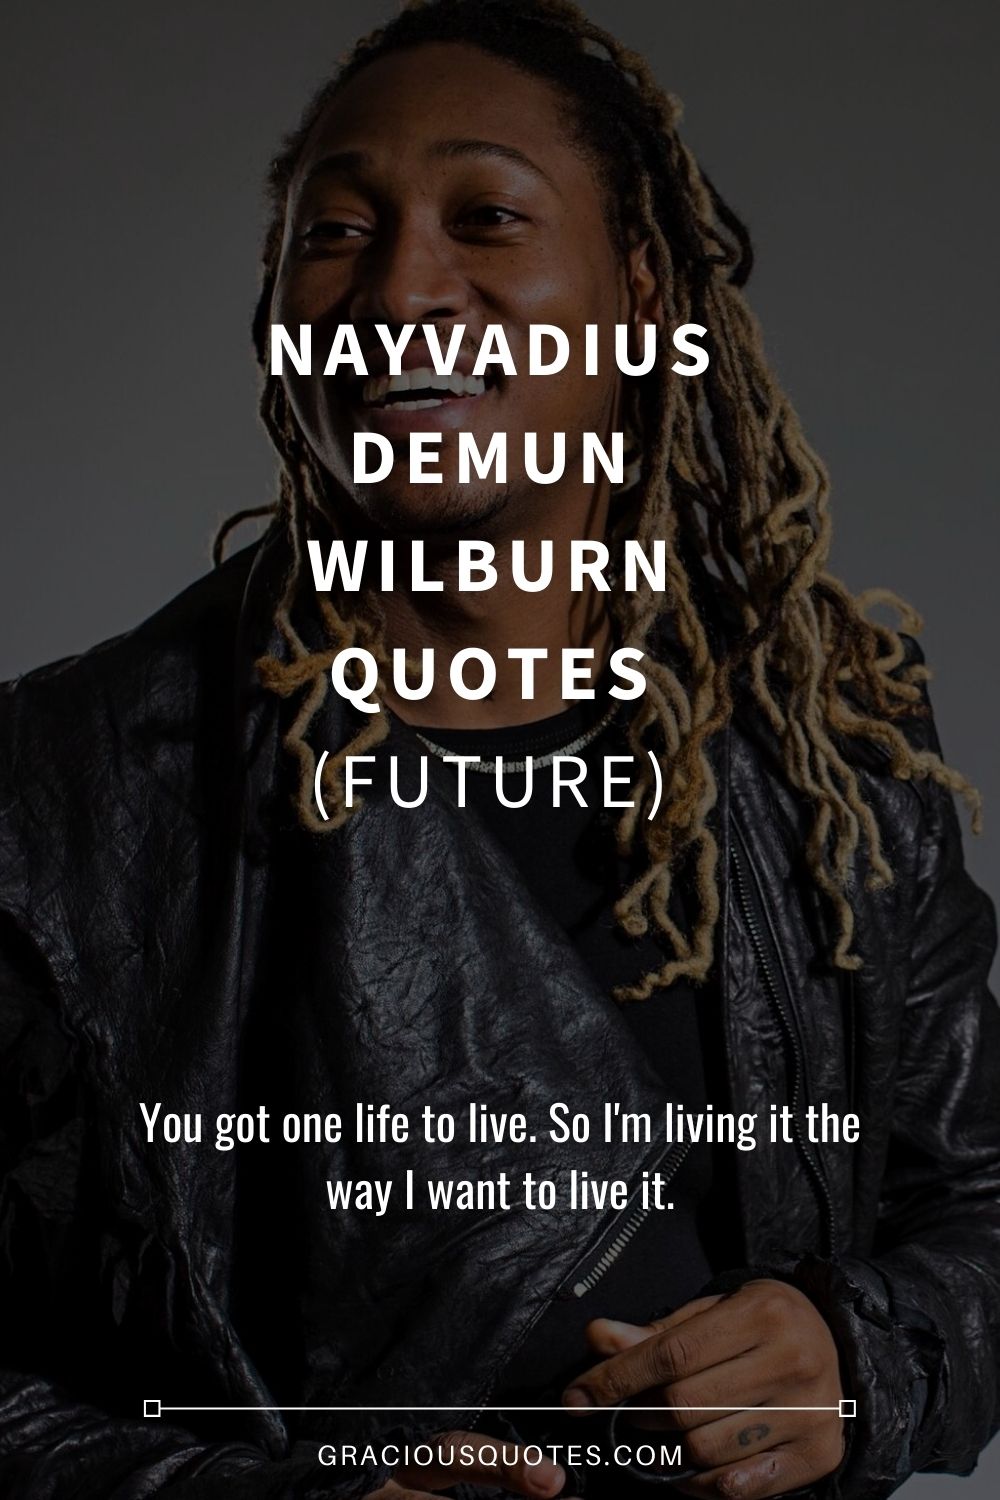 Nayvadius DeMun Wilburn Quotes (FUTURE) - Gracious Quotes